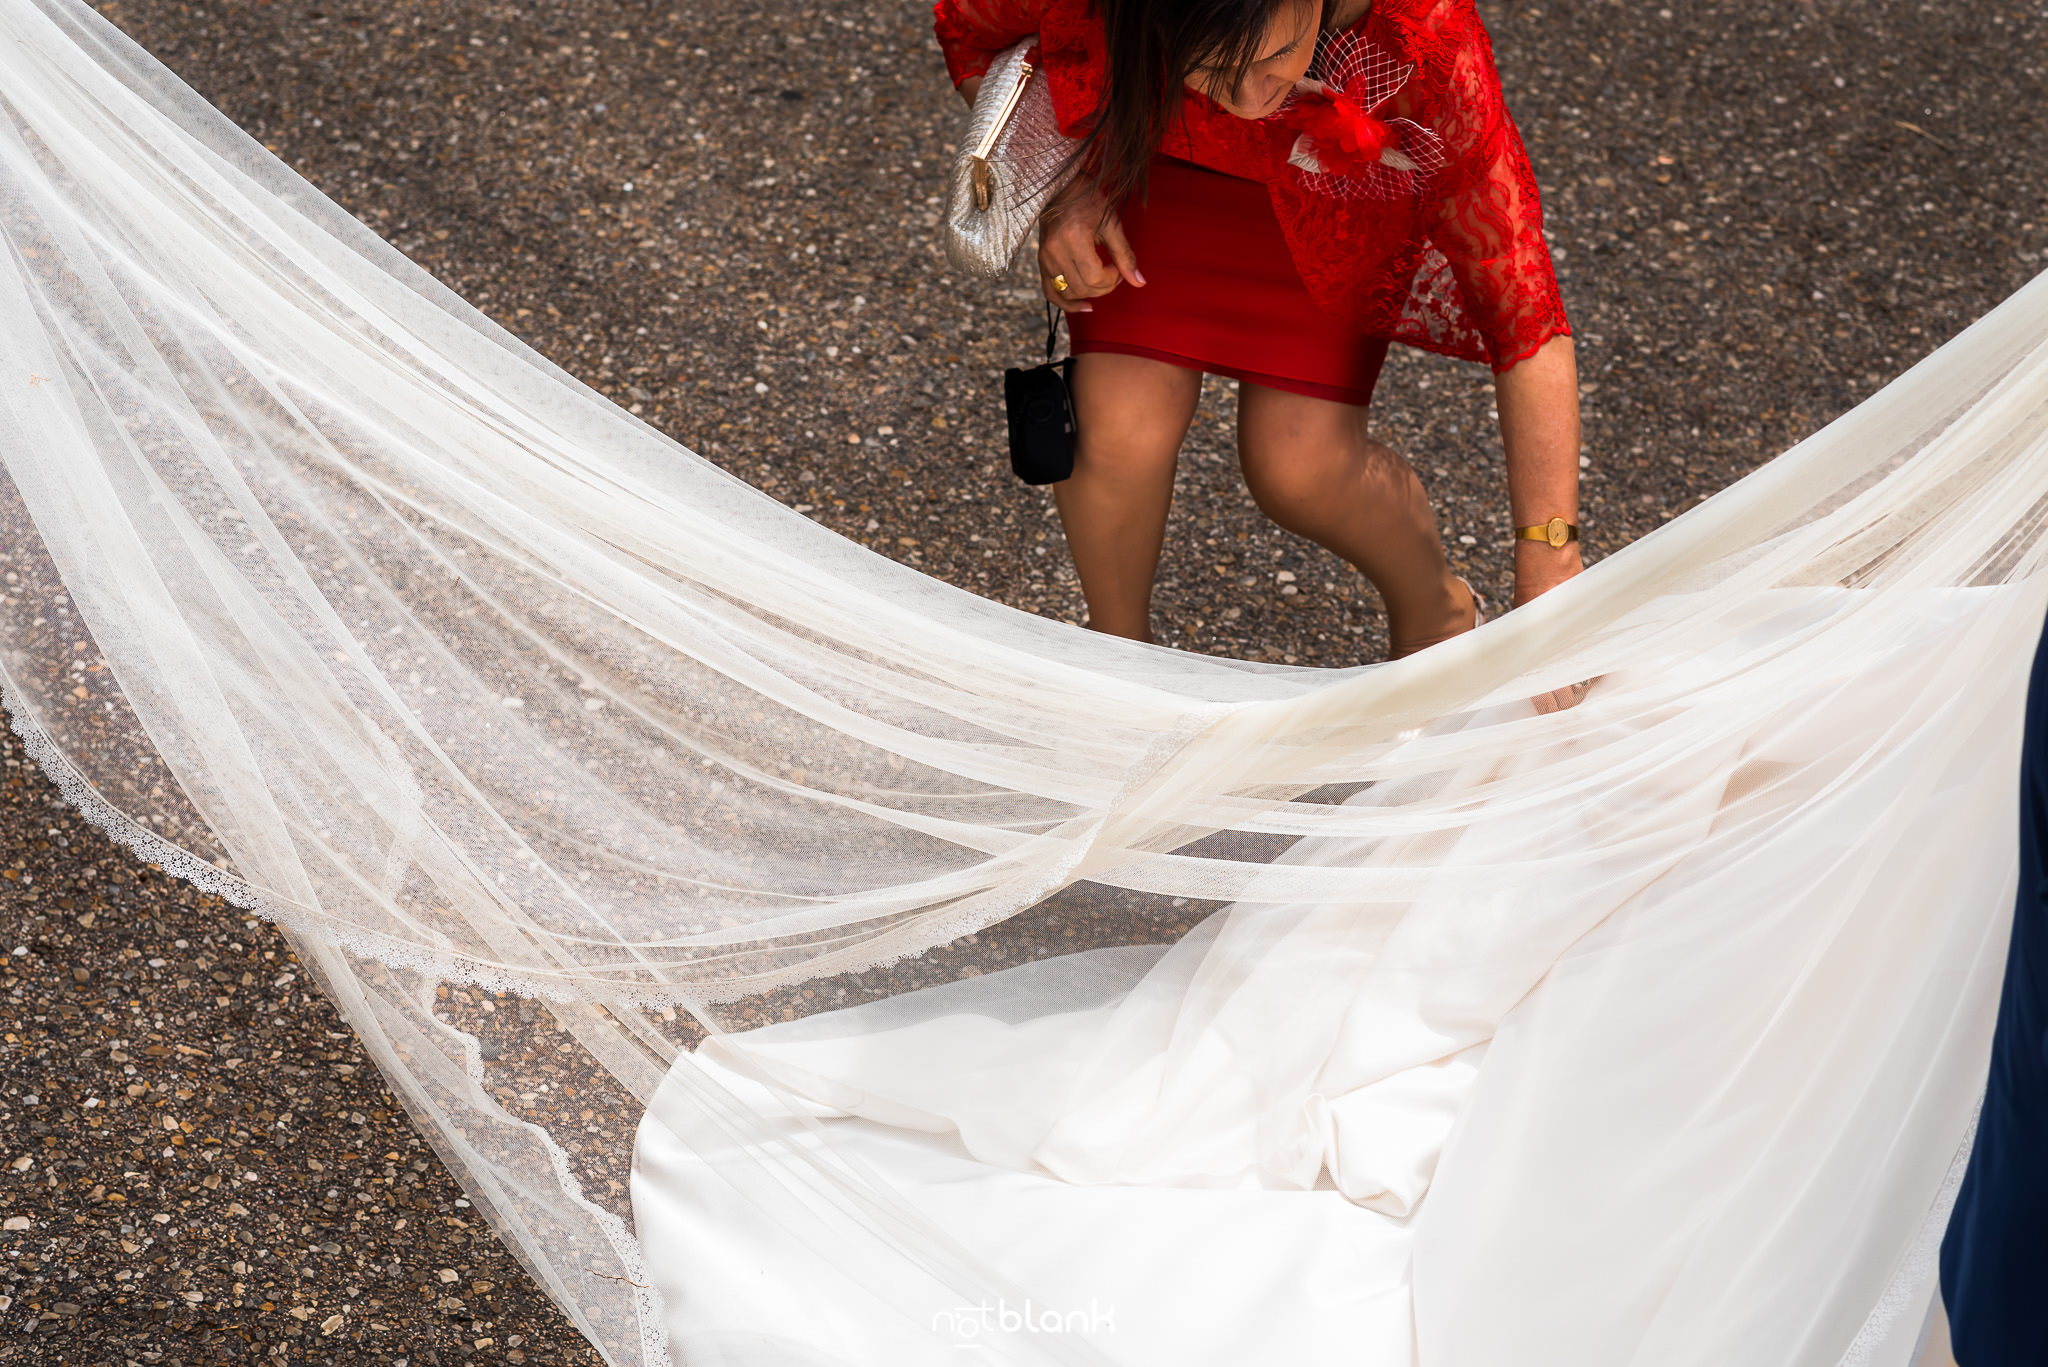 Boda de Conchi y Rubén en La Guardia. Reportaje realizado por Notblank Fotografos de boda.